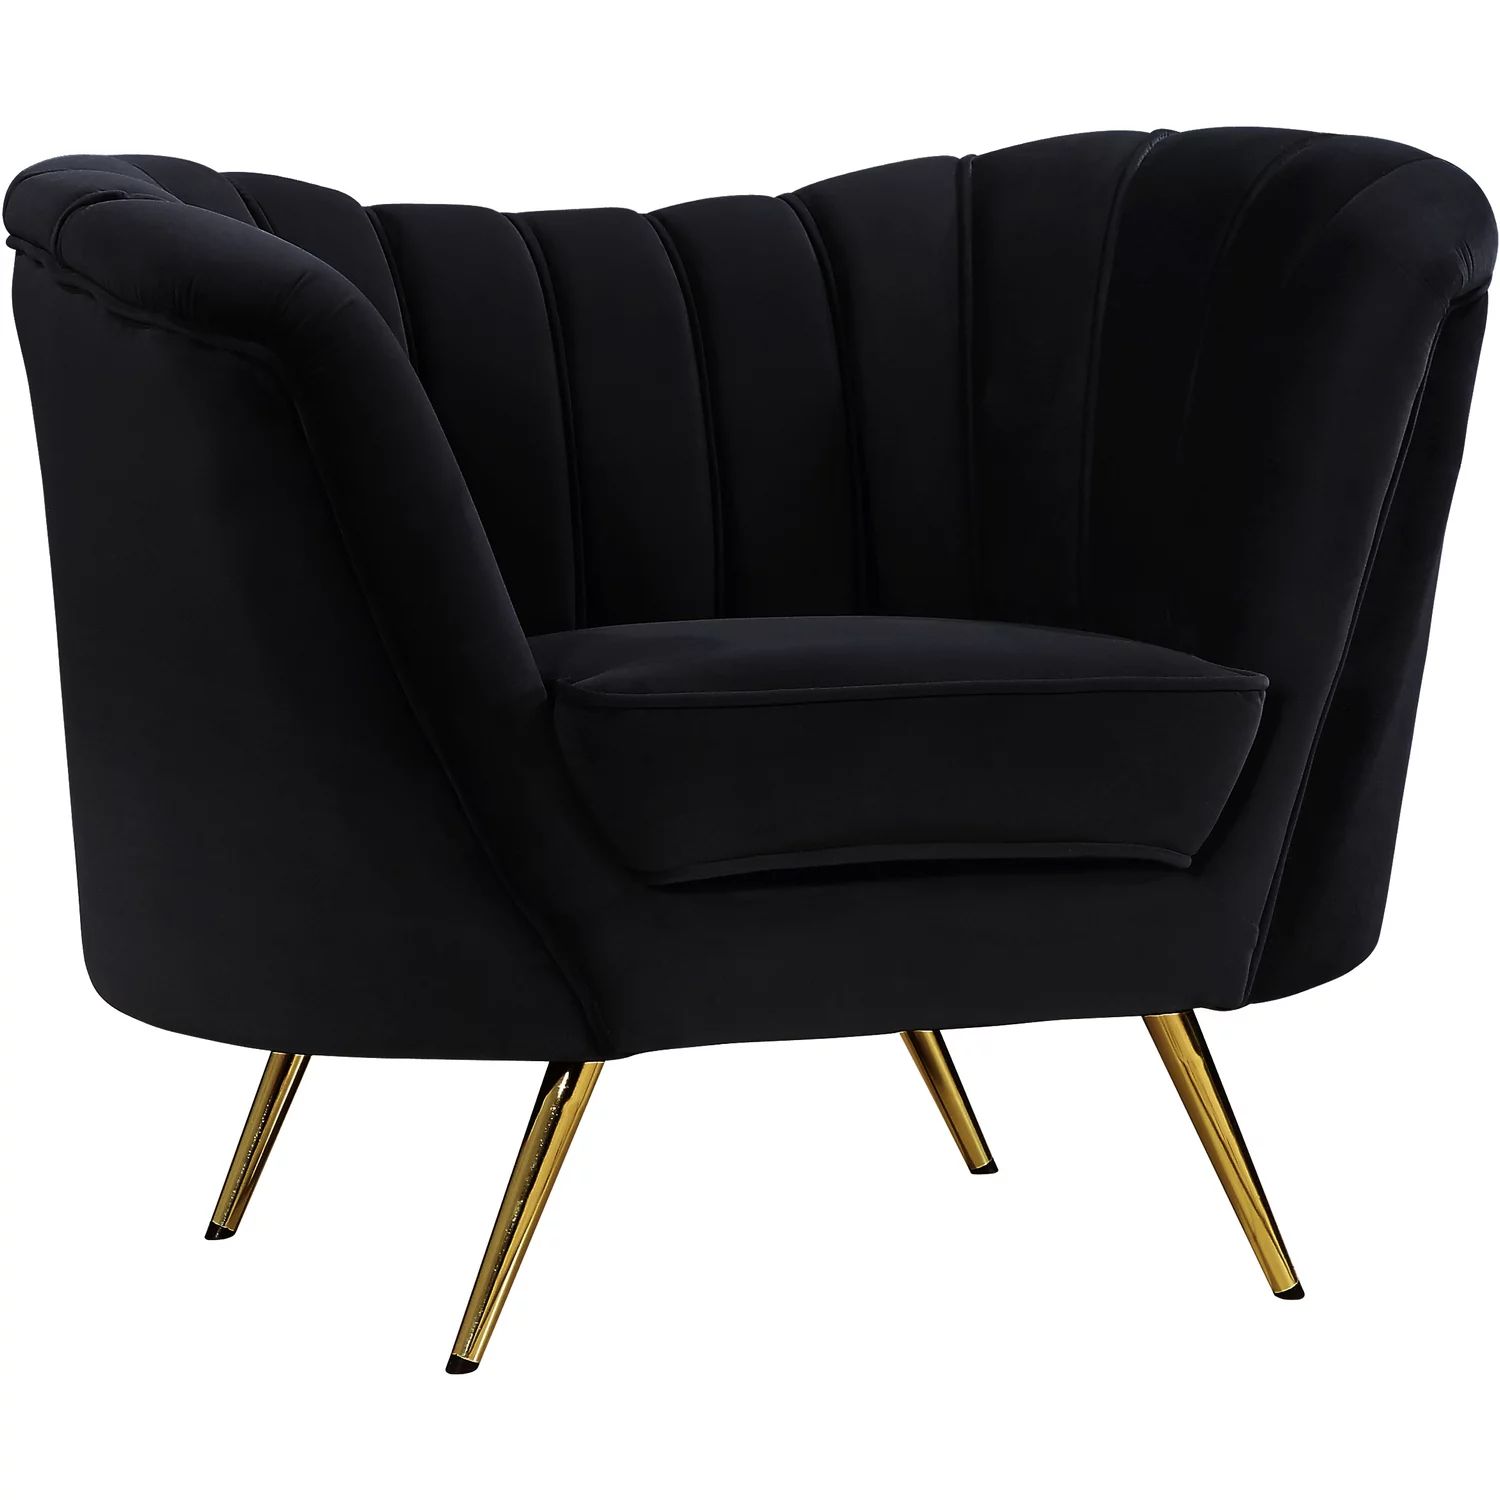 Margo Black Velvet Chair-Color:Black Velvet,Style:Contemporary | Walmart (US)